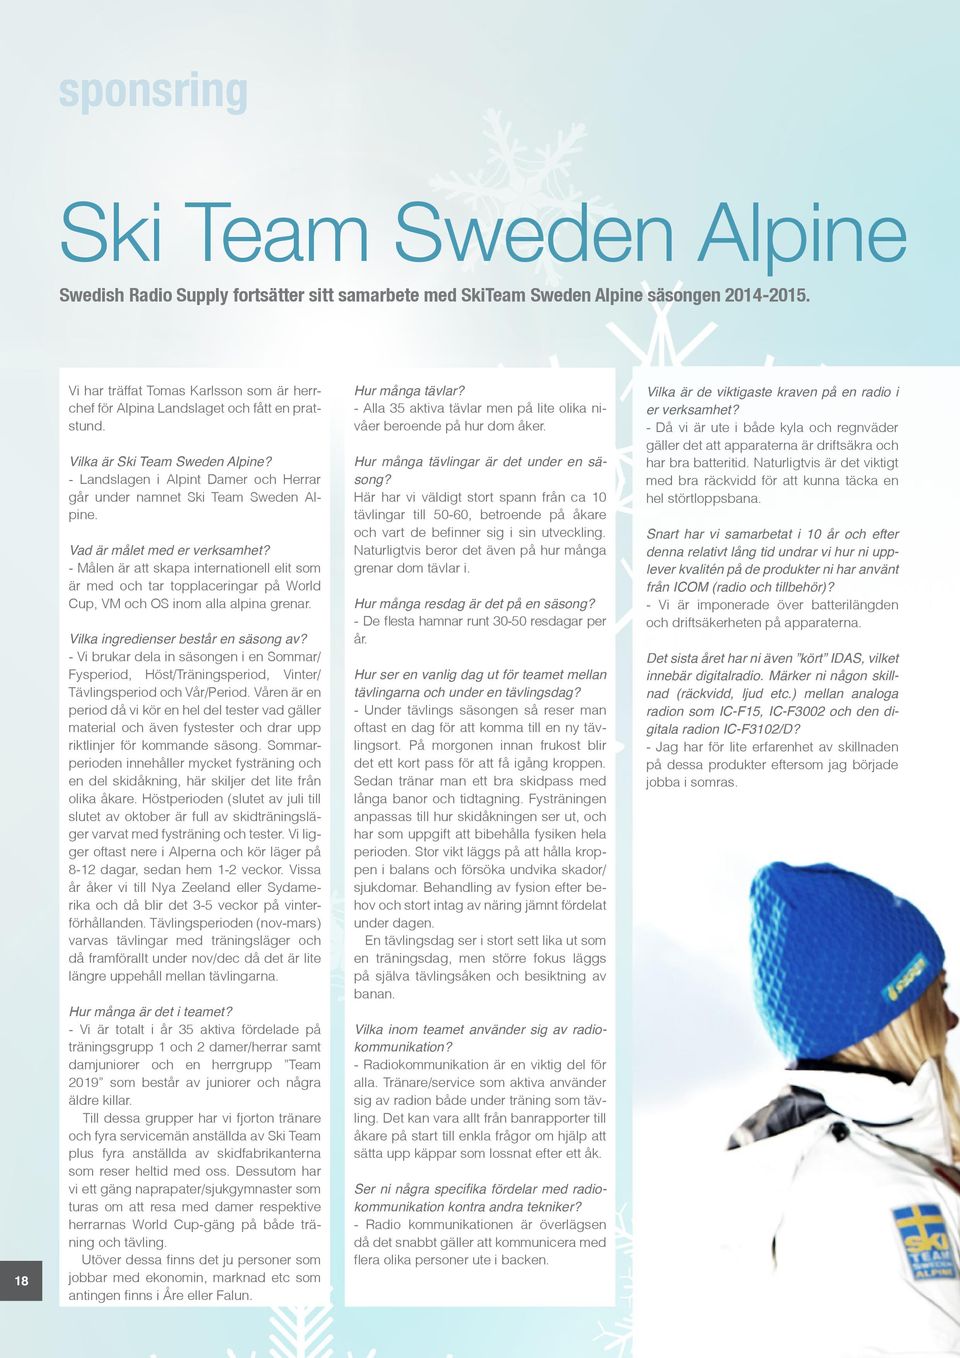 - Landslagen i Alpint Damer och Herrar går under namnet Ski Team Sweden Alpine. Vad är målet med er verksamhet?